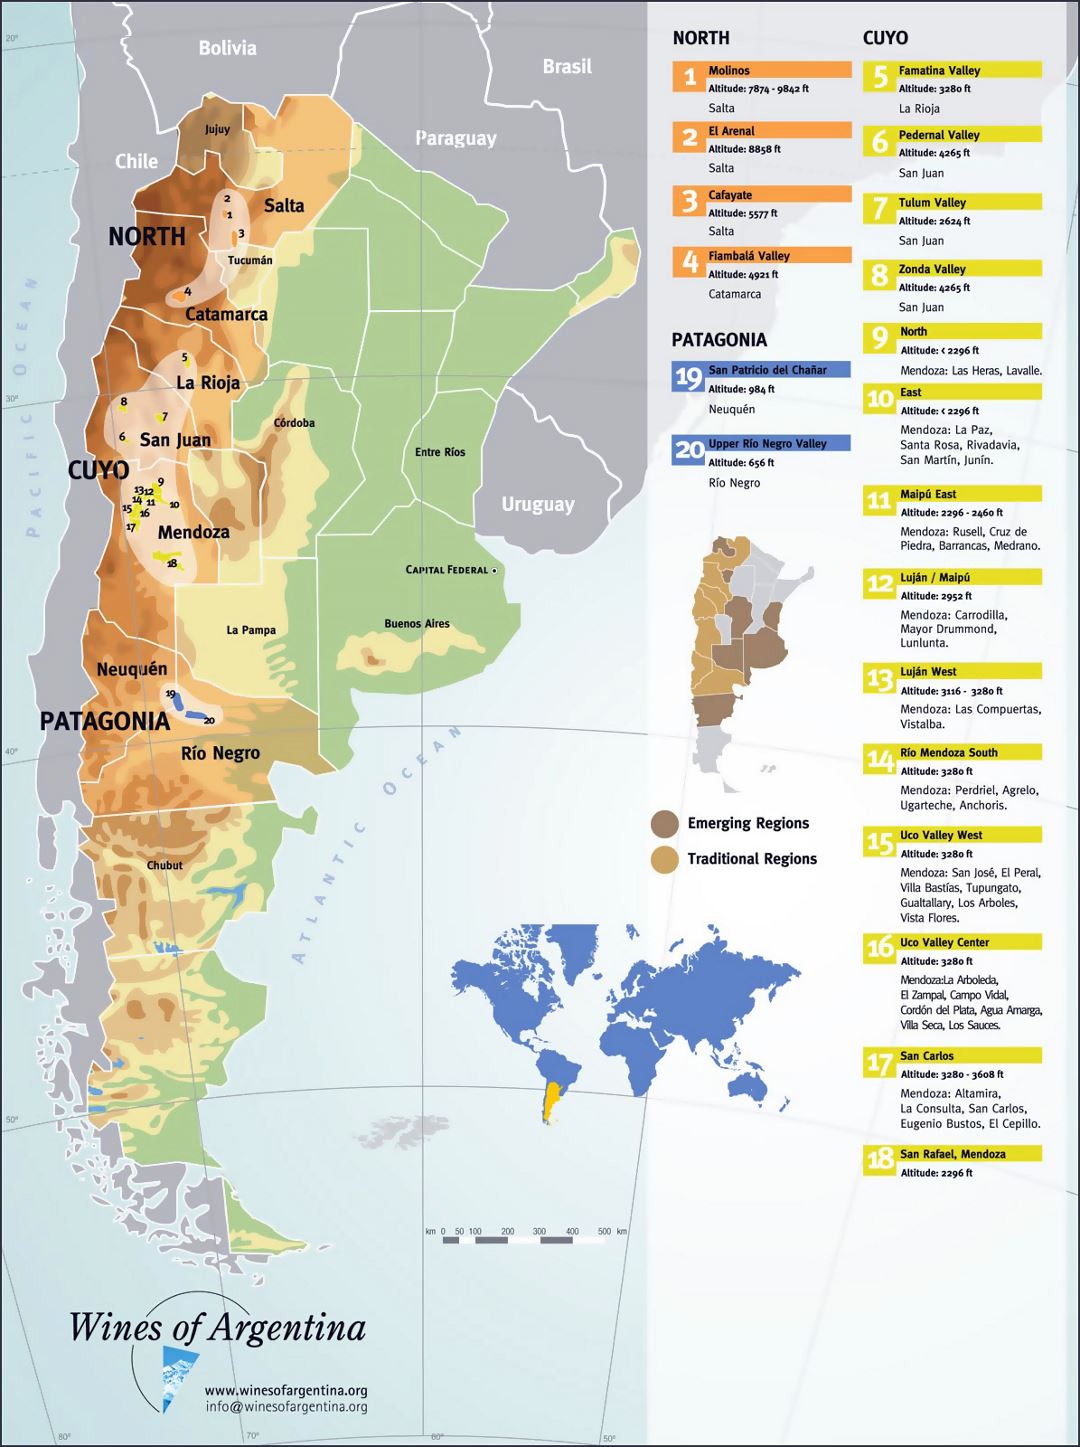 Большая детальная карта винных регионов Аргентины